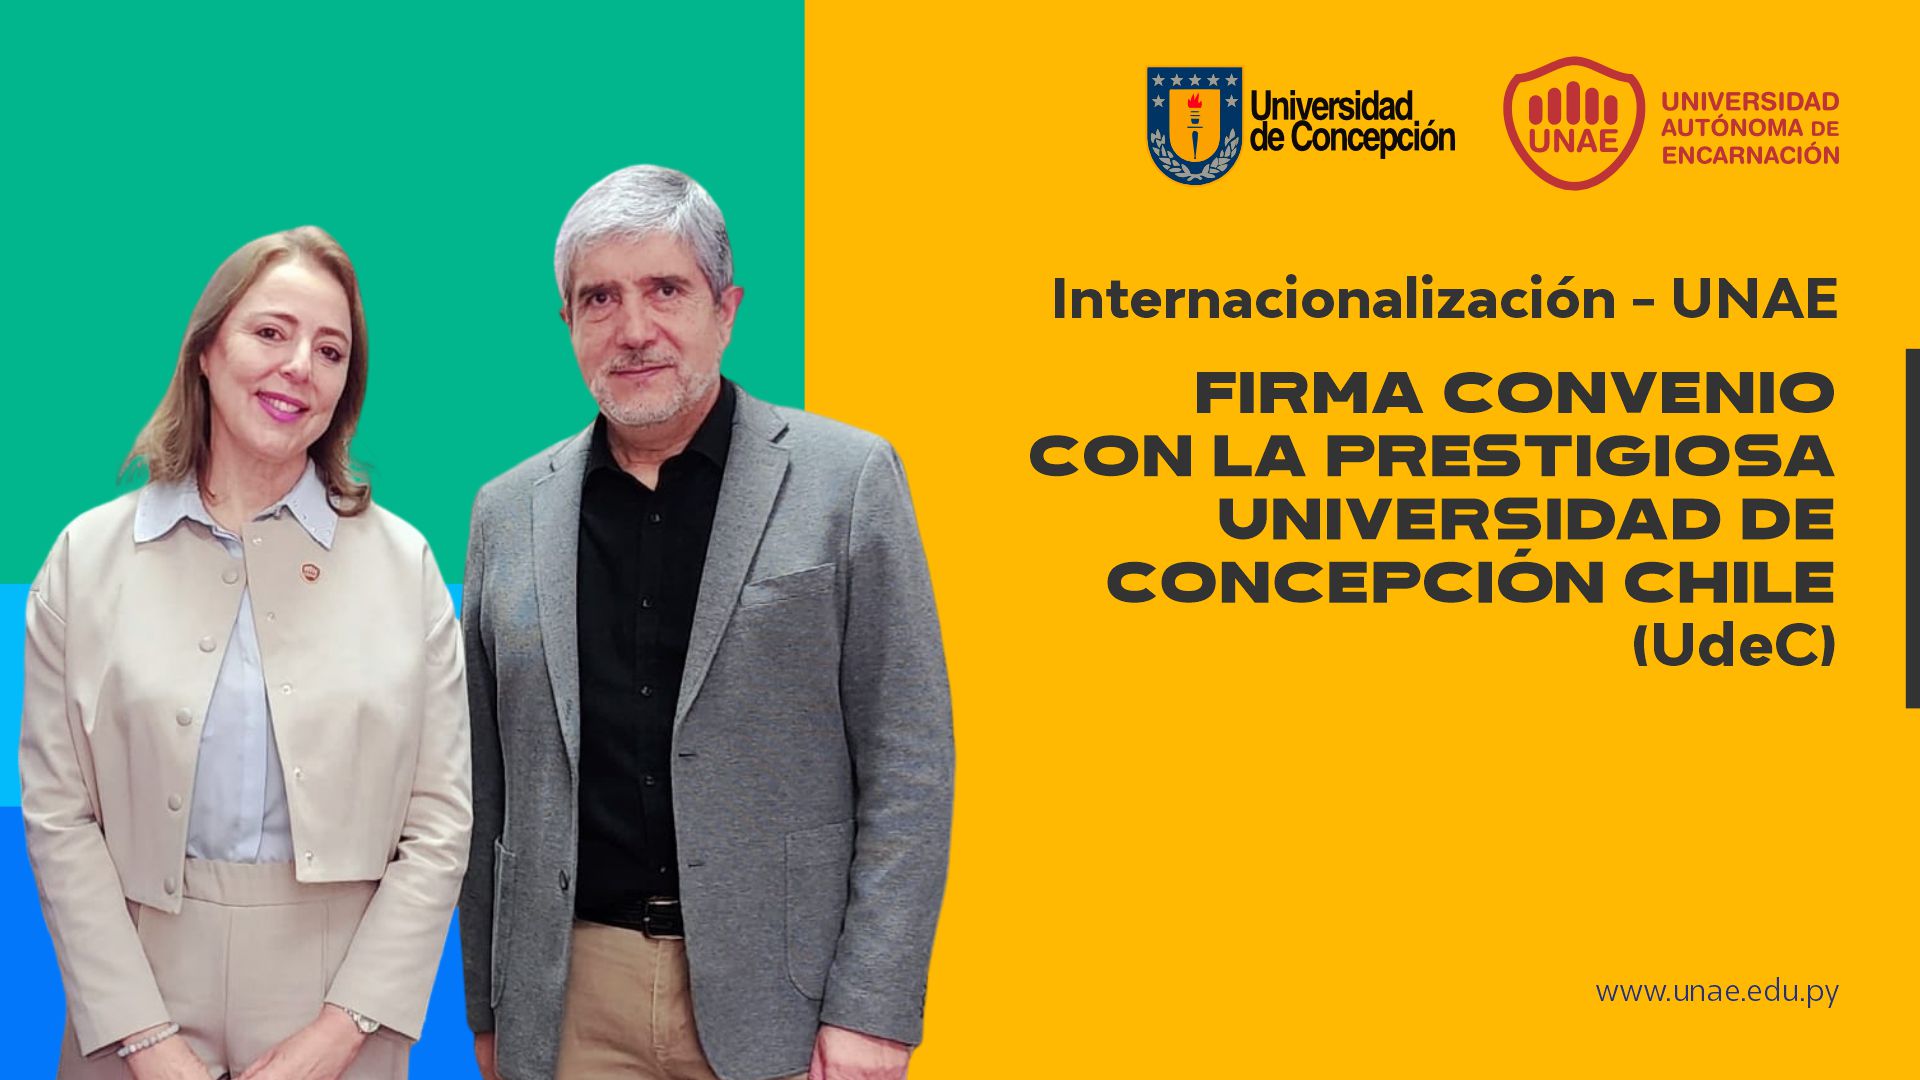 Internacionalización - UNAE firma convenio con la prestigiosa Universidad de Concepción Chile-UdeC